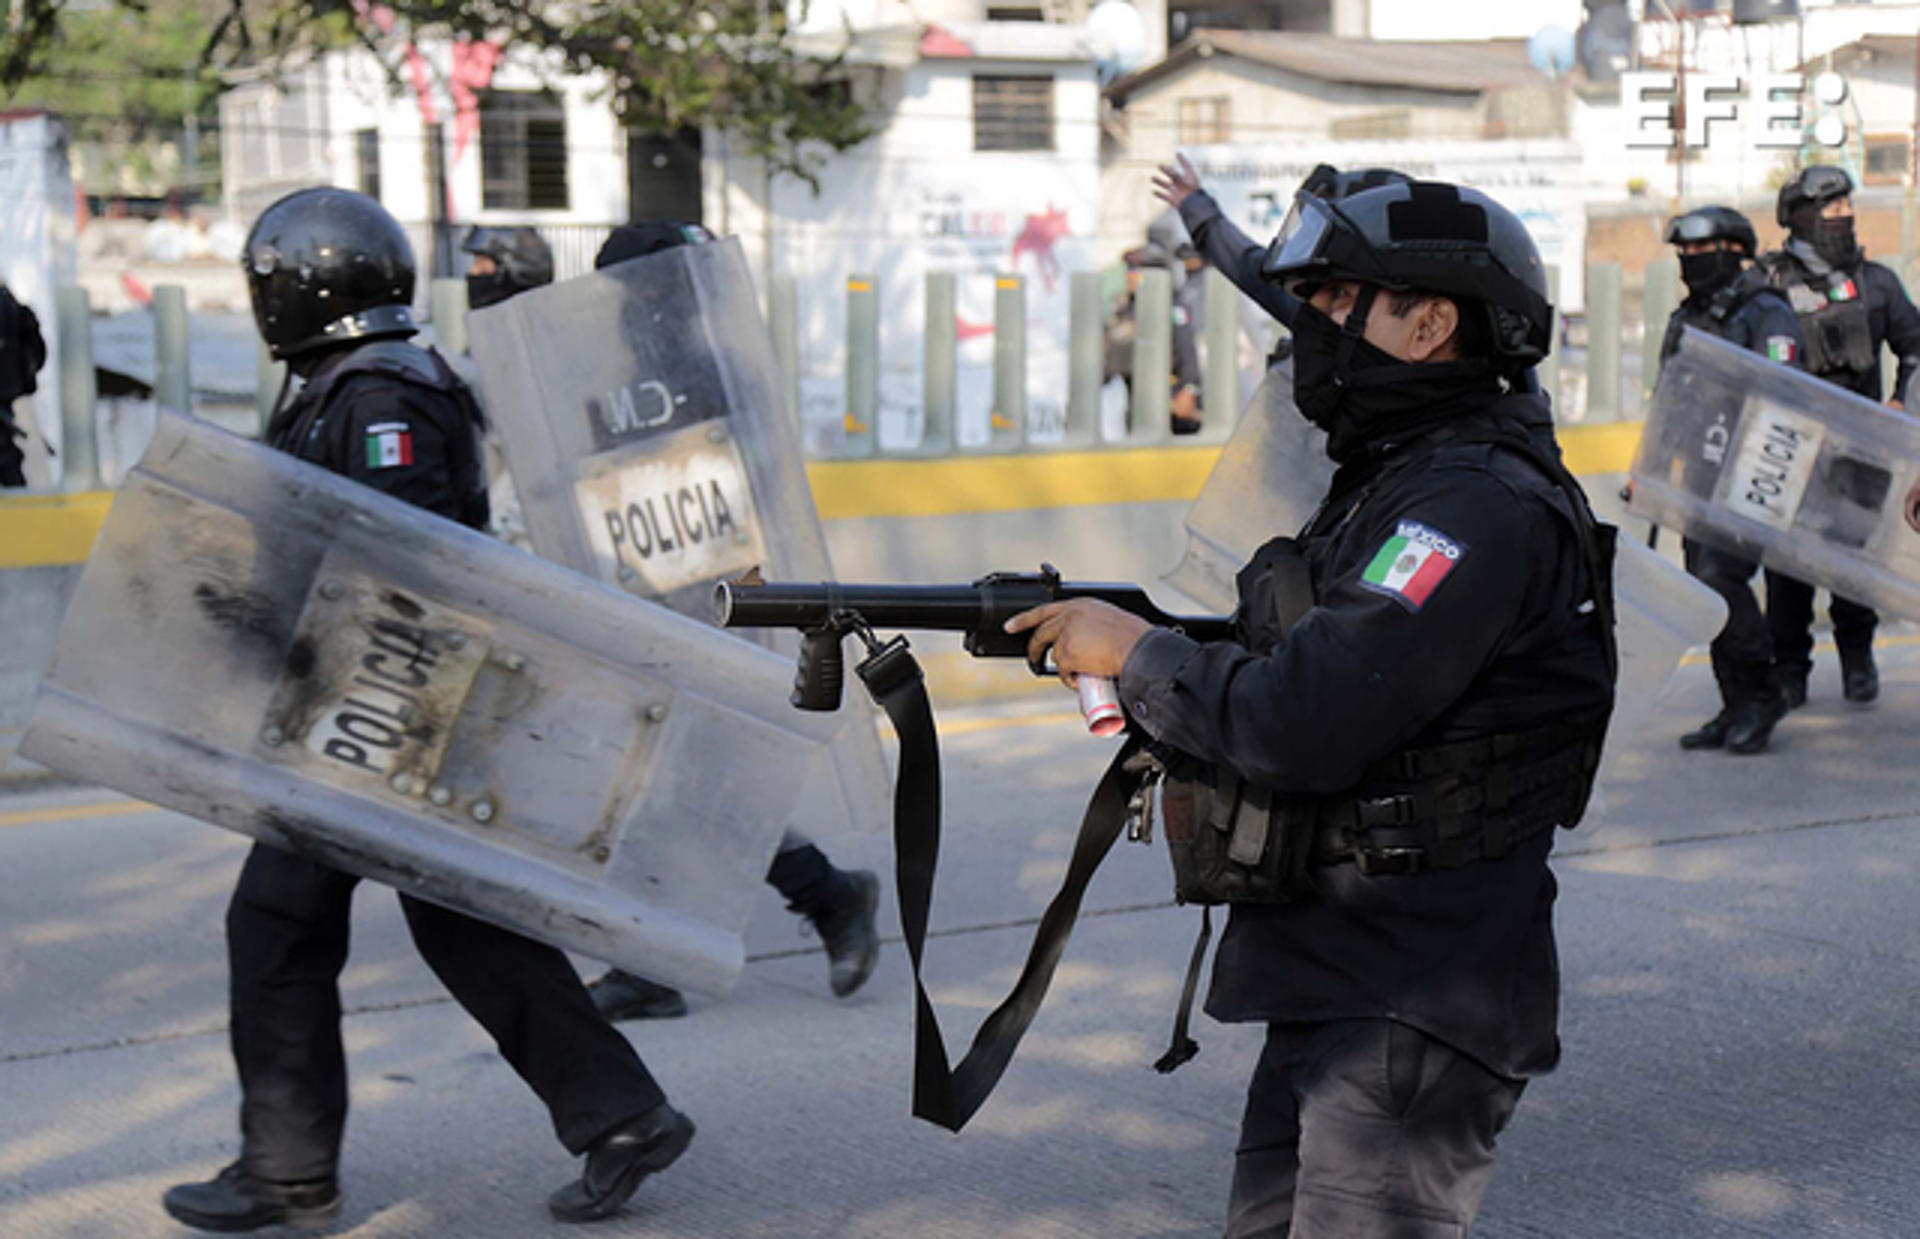 Estudiantes de Ayotzinapa chocan con policías en autopista de sur de México